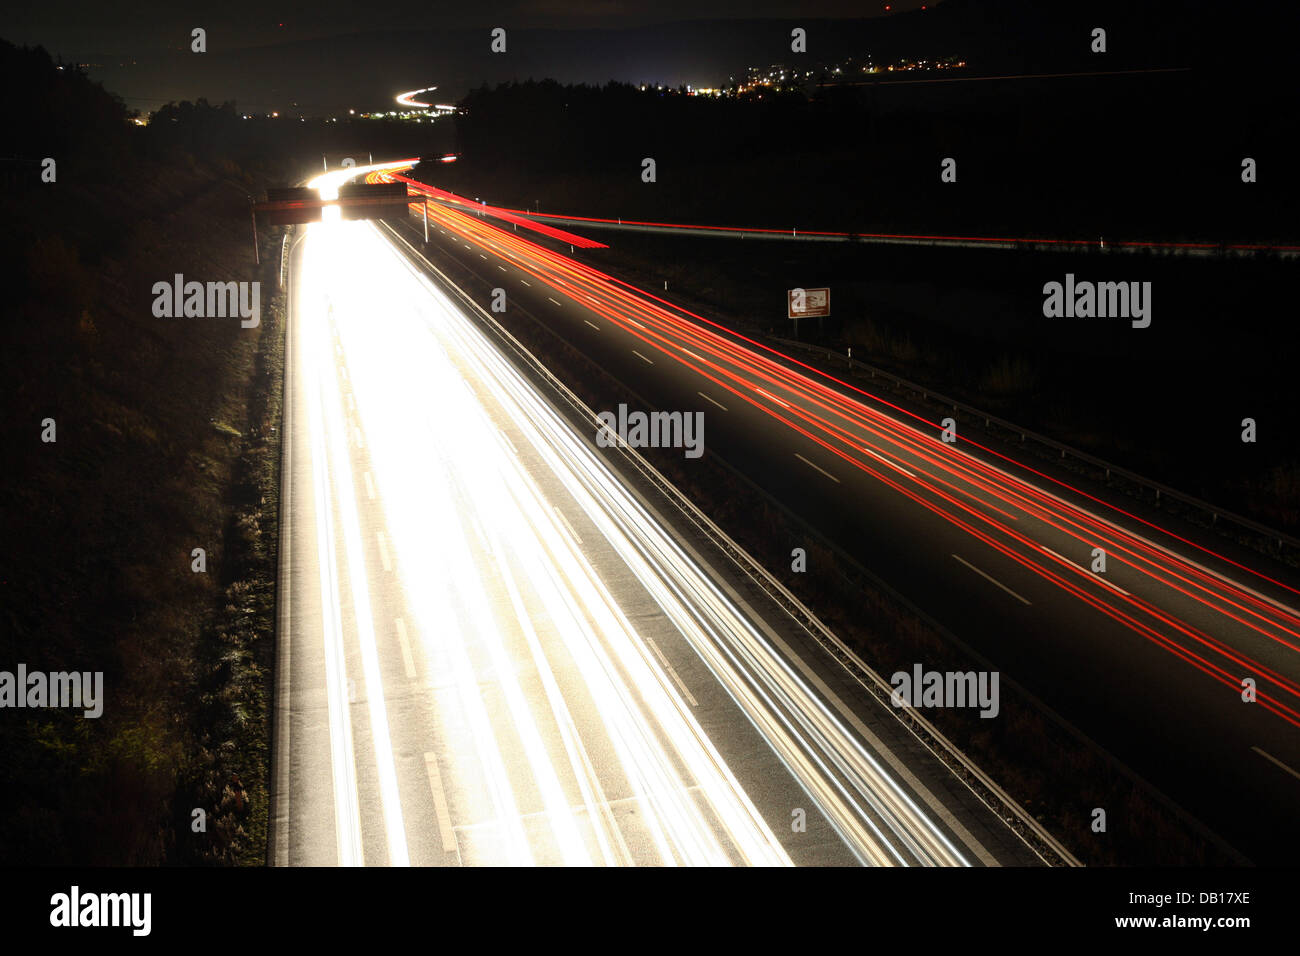 La photo montre une fois l'exposition d'autoroute allemande Autobahn 9 la nuit près de Bindlach, Allemagne, 4 novembre 2007. En raison d'une exposition de 30 secondes les lumières des voitures apparaissent comme des lignes. Photo : Marcus Fuehrer Banque D'Images